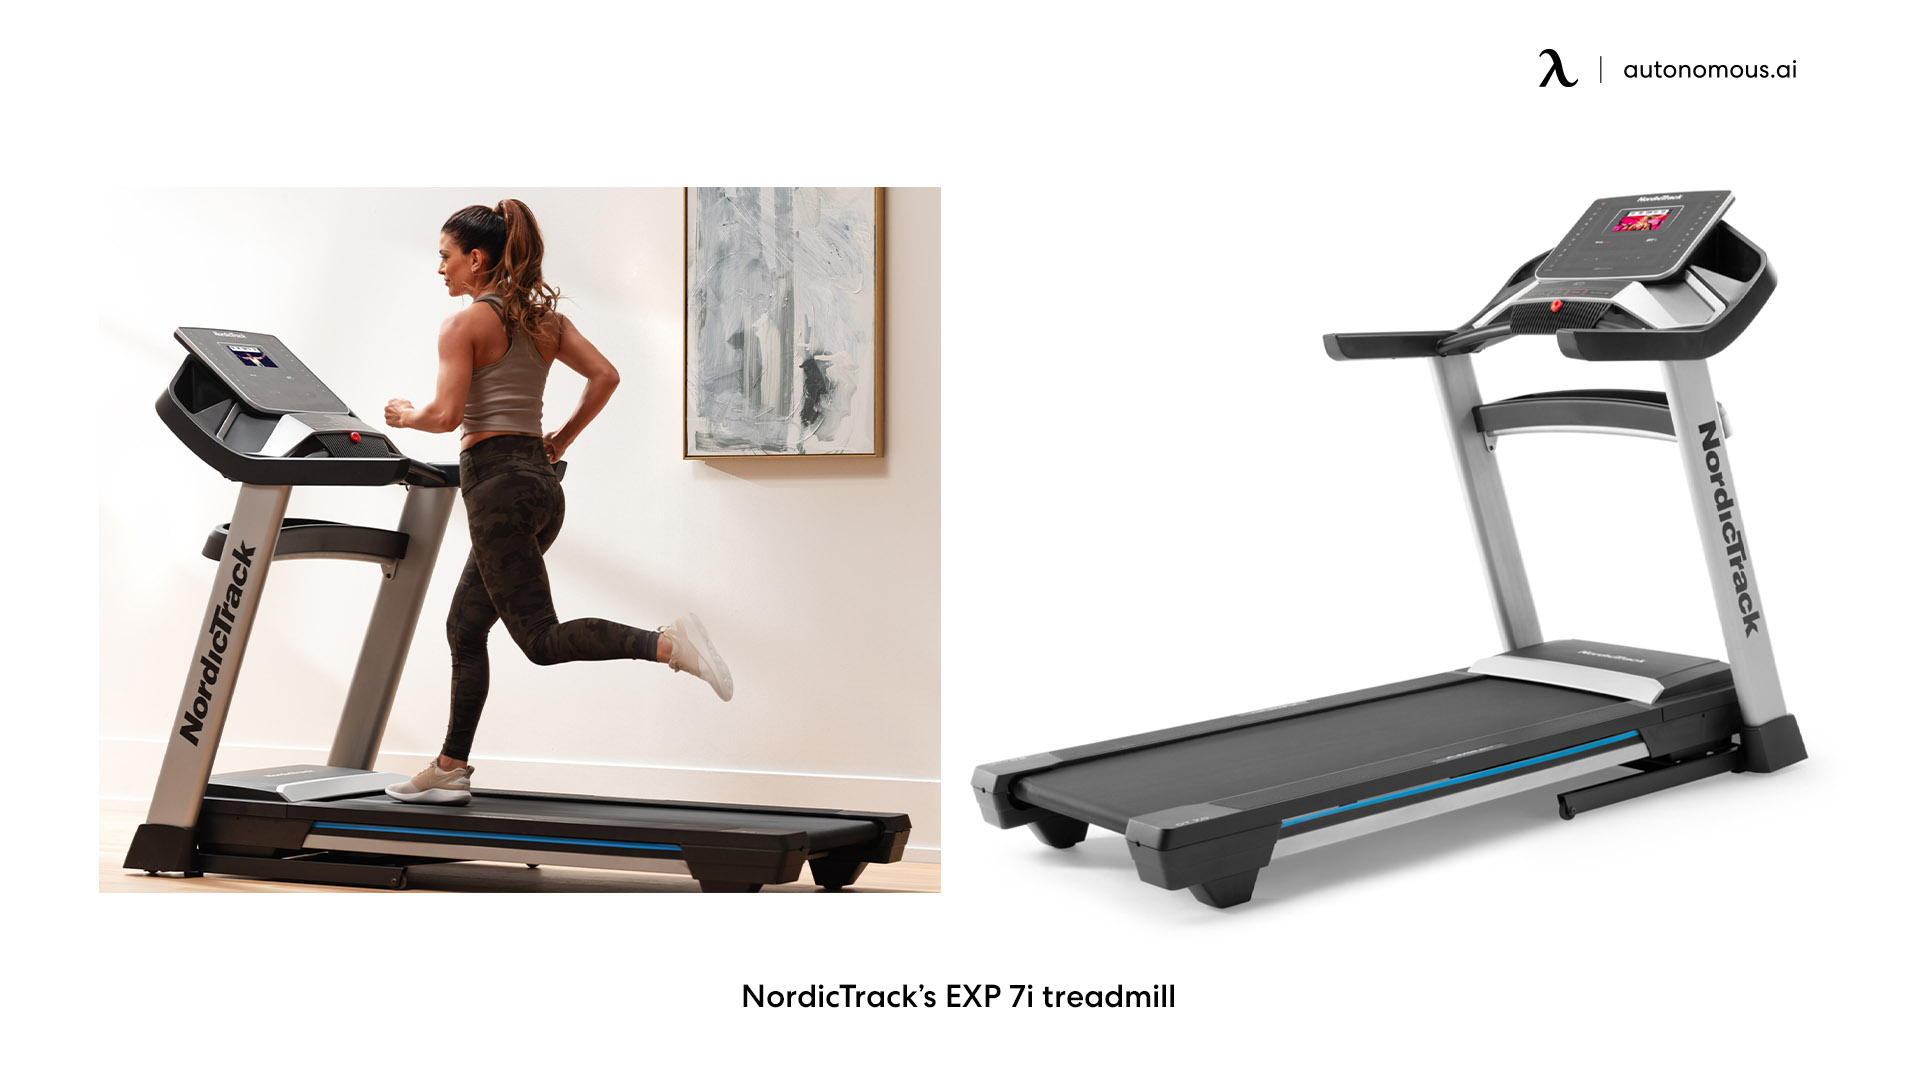 NordicTrack’s EXP 7i small walking treadmill